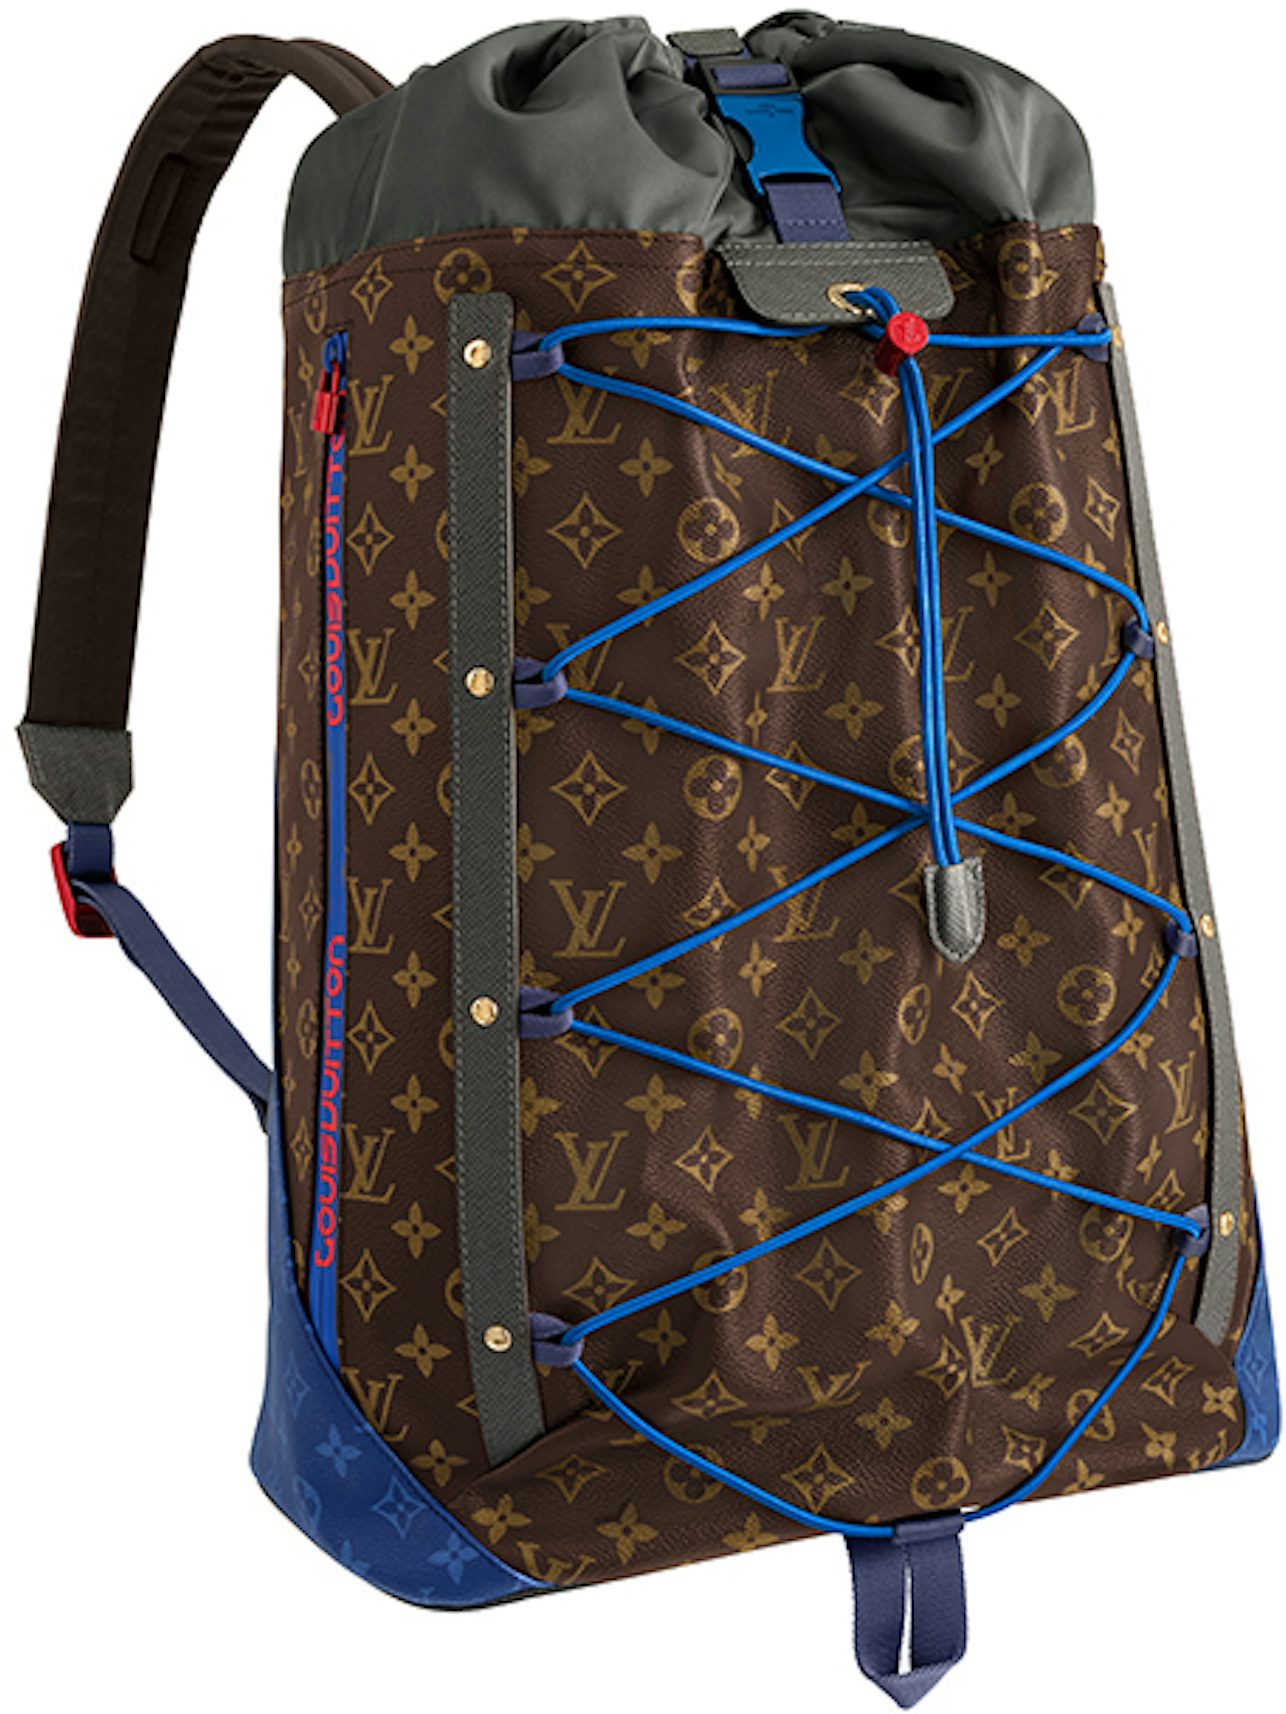 $1200 Louis Vuitton Classic Monogram Canvas Ellipse Backpack Bag